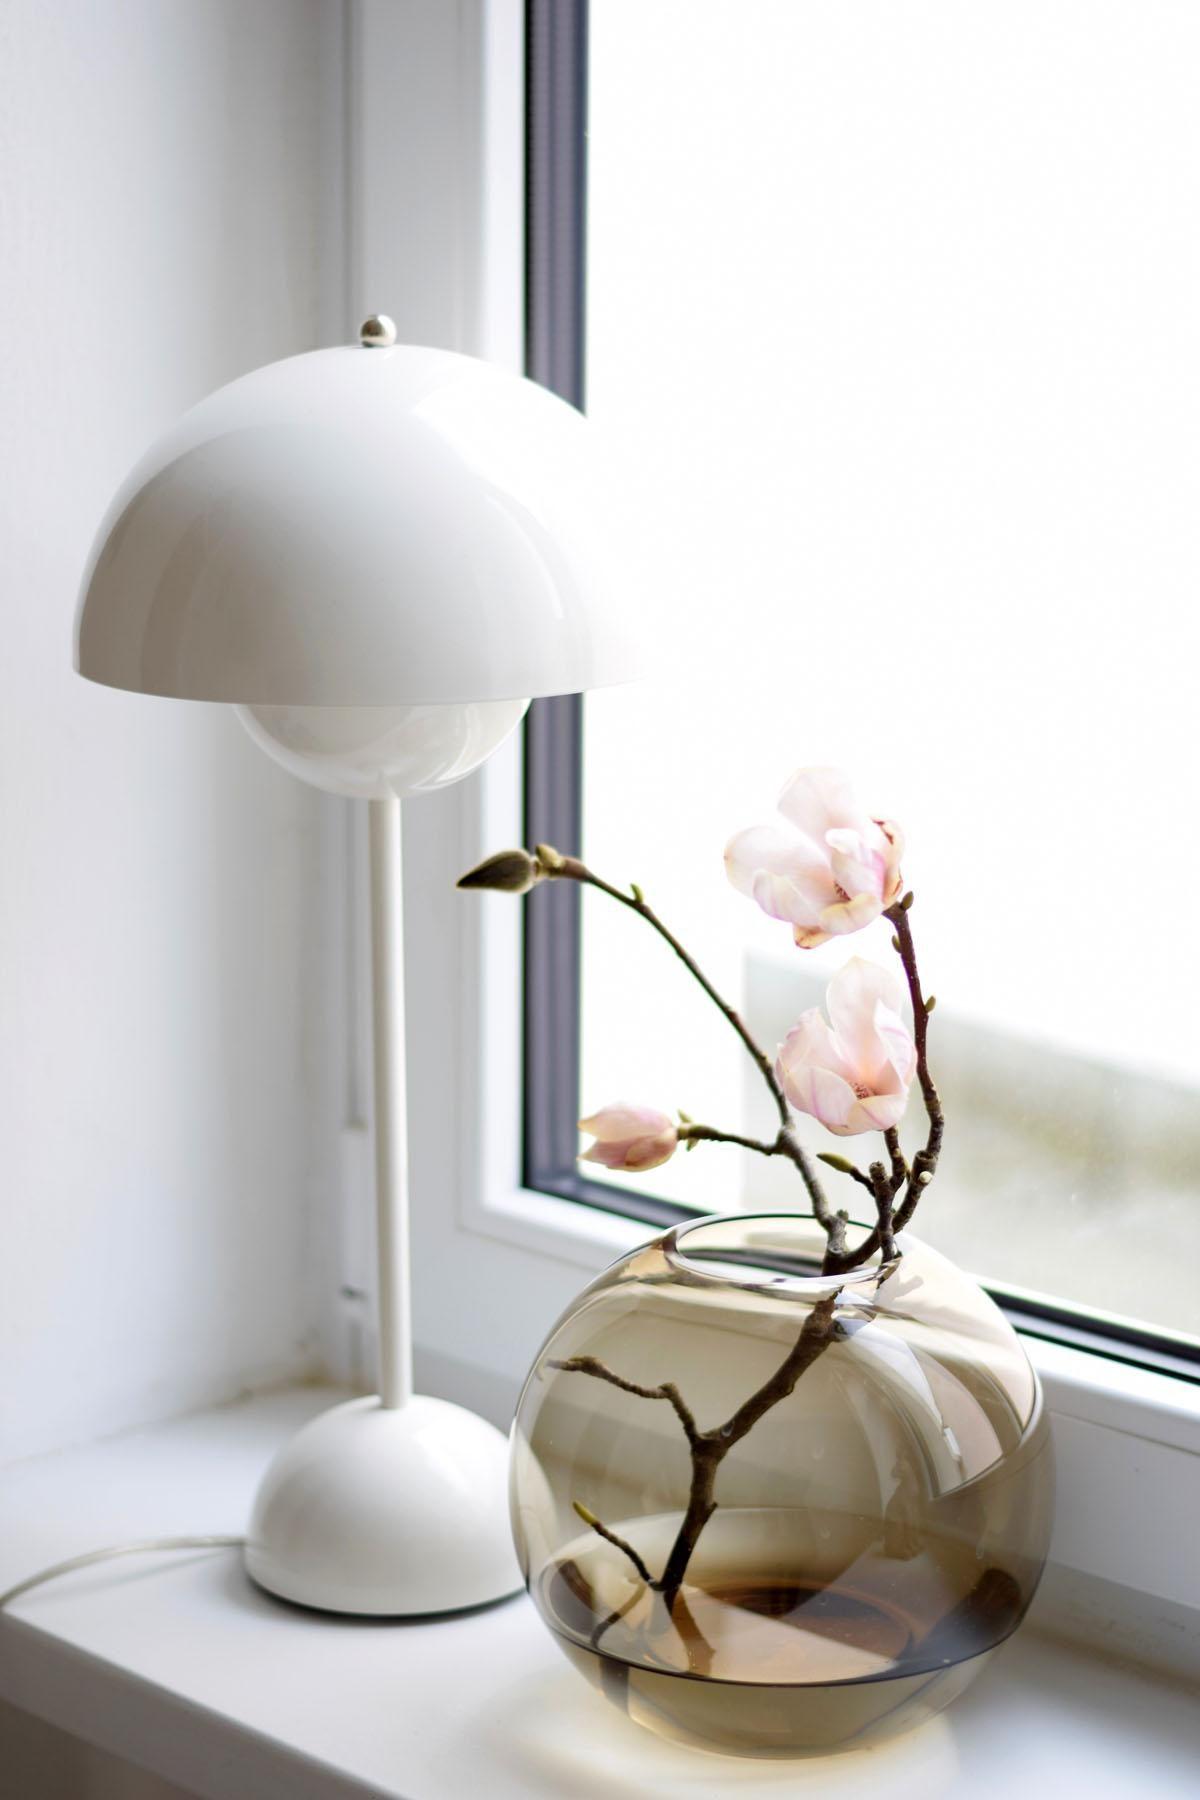 Magnolie und Vintage Rauchglasvase...
#midcentury #flowerpot #magnolie